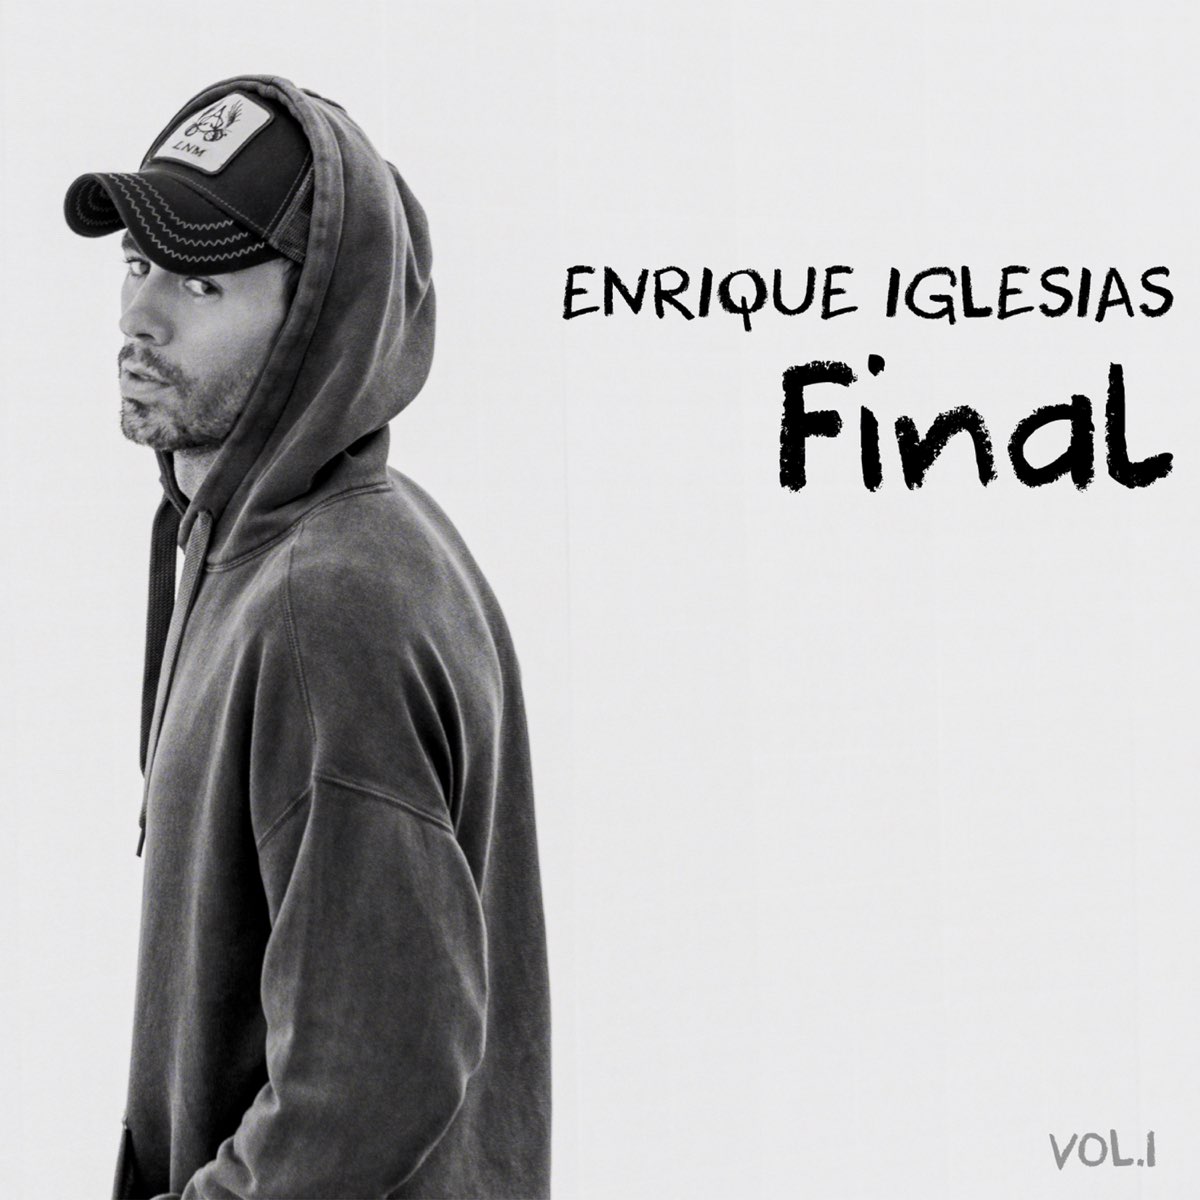 FINAL (Vol.1) - Album by Enrique Iglesias - Apple Music